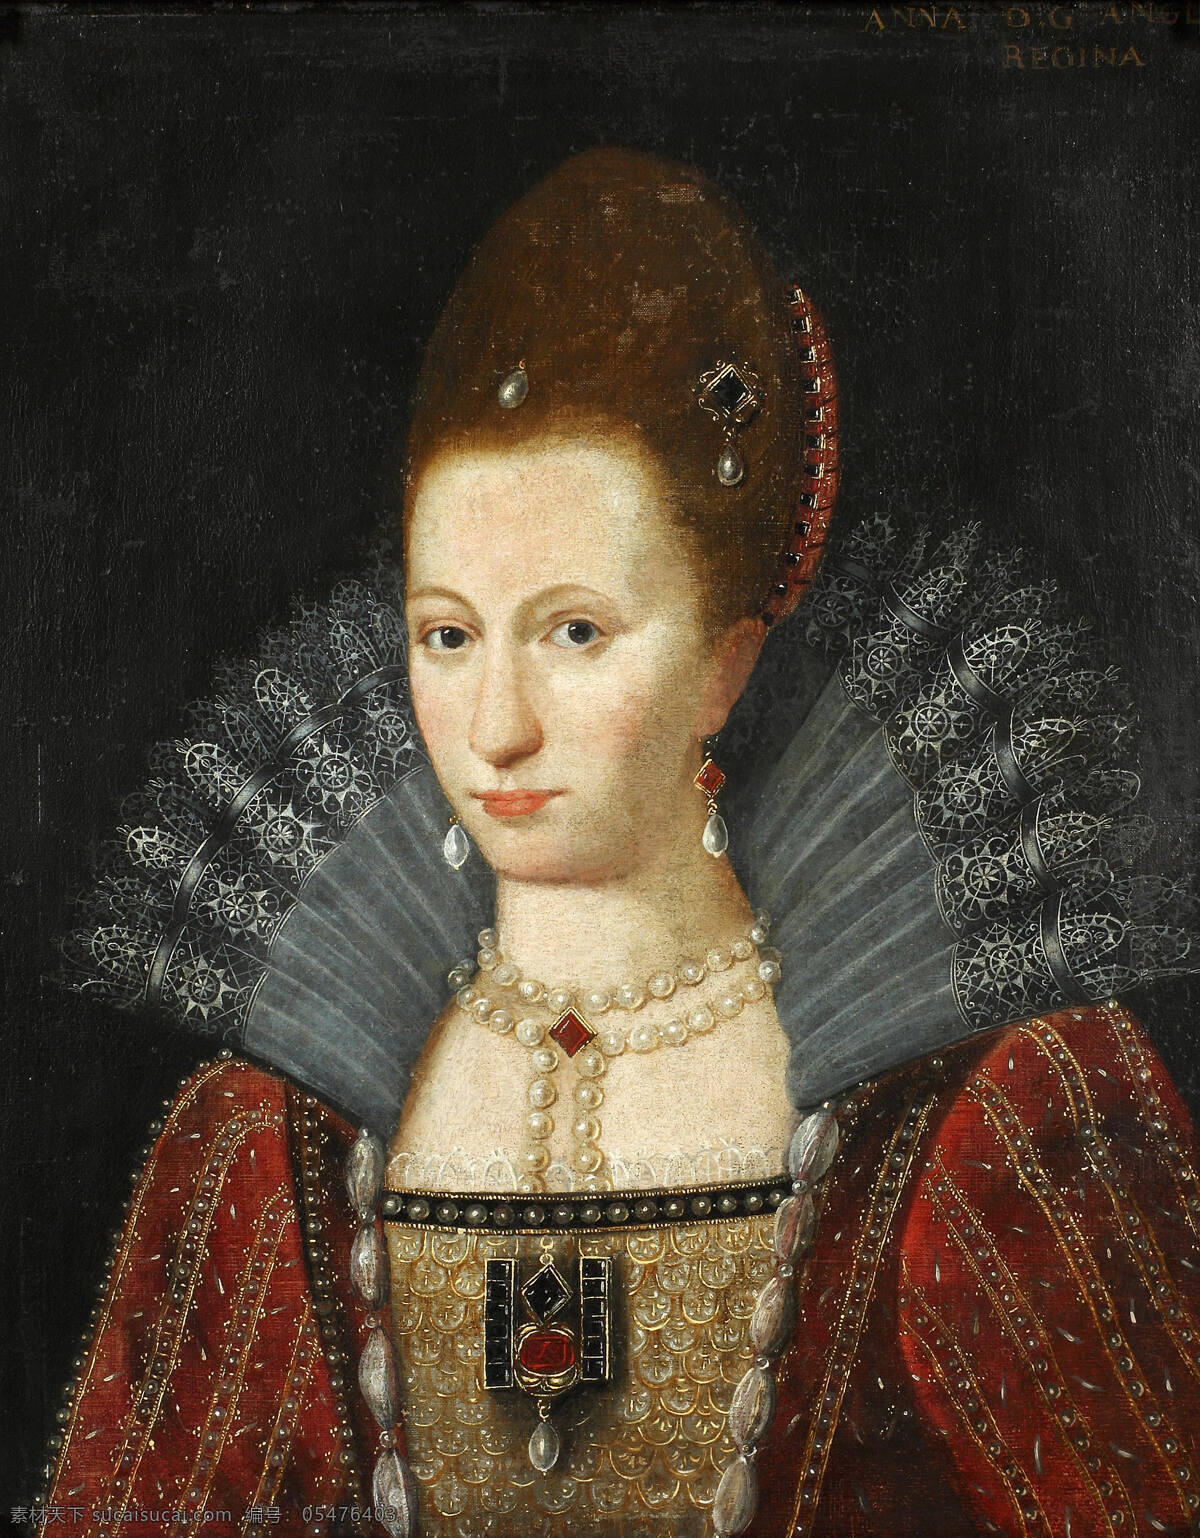 丹麦公主安尼 斯图亚特王朝 开国君主 詹姆斯一世 之妻 英国王后 查理一世生母 半身肖像 古典油画 油画 文化艺术 绘画书法